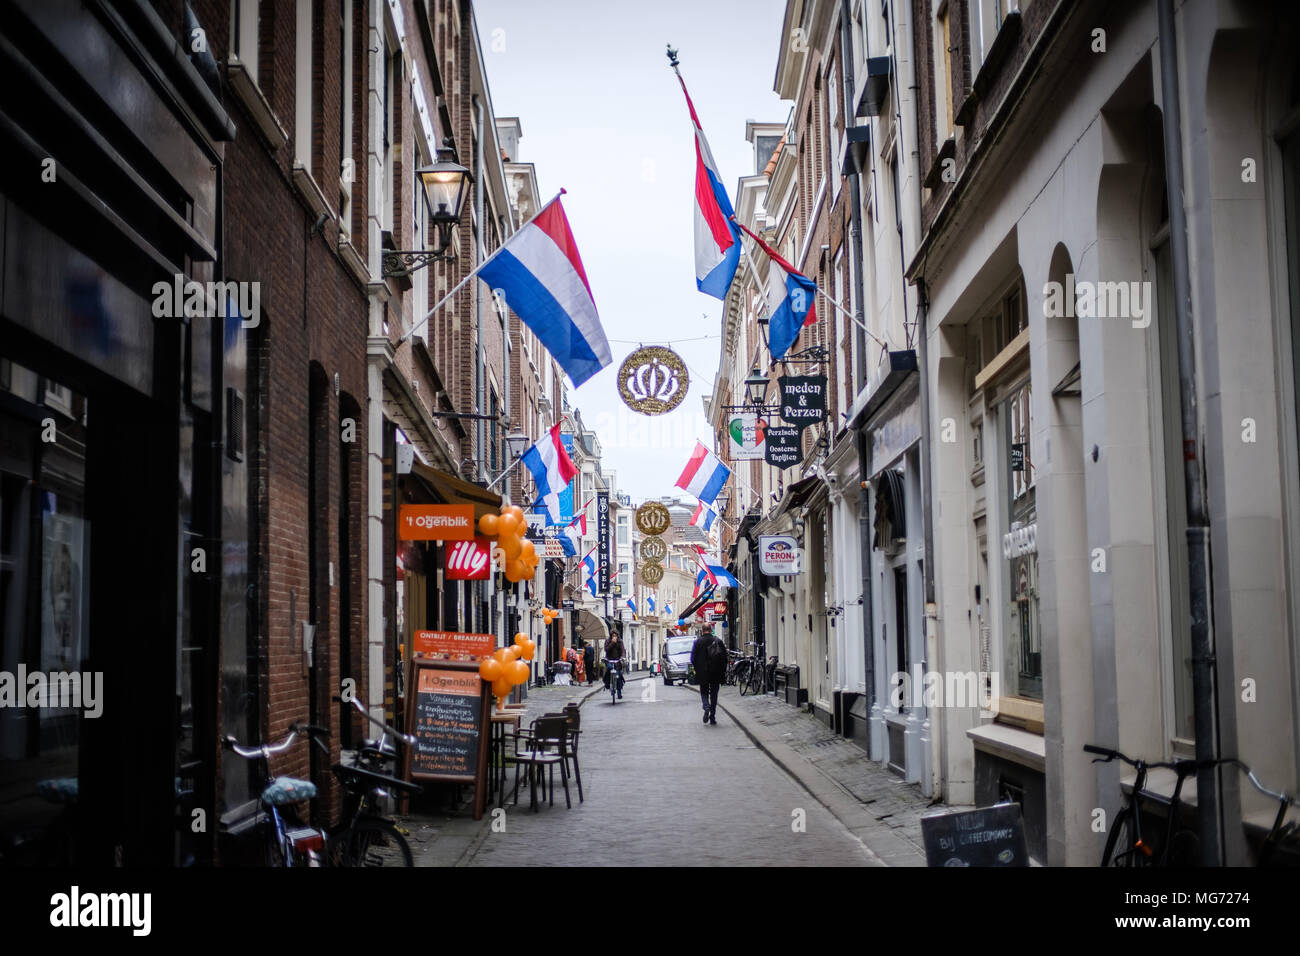 Drapeaux nationaux vu à la fête du Roi dans la ville de La Haye en Hollande. Koningsdag ou King's Day est une fête nationale du Royaume des Pays-Bas. Célébrée le 27 avril, cette date marque la naissance du Roi Willem-Alexander. Banque D'Images